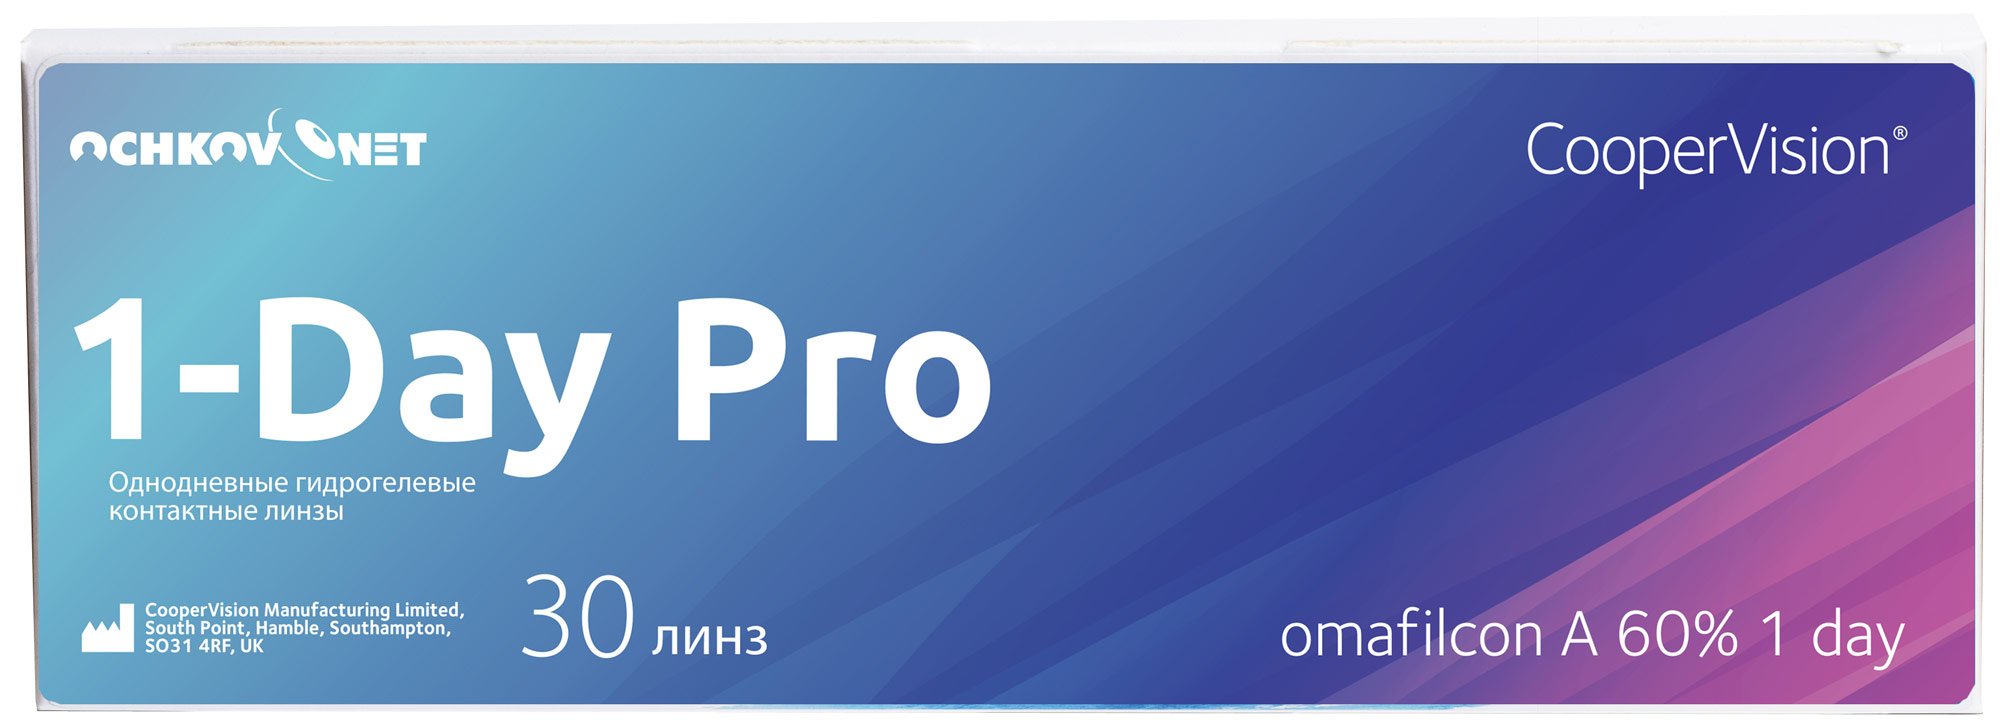 Купить Контактные линзы Ochkov.Net 1-Day Pro 30 линз 8.7, -9.5